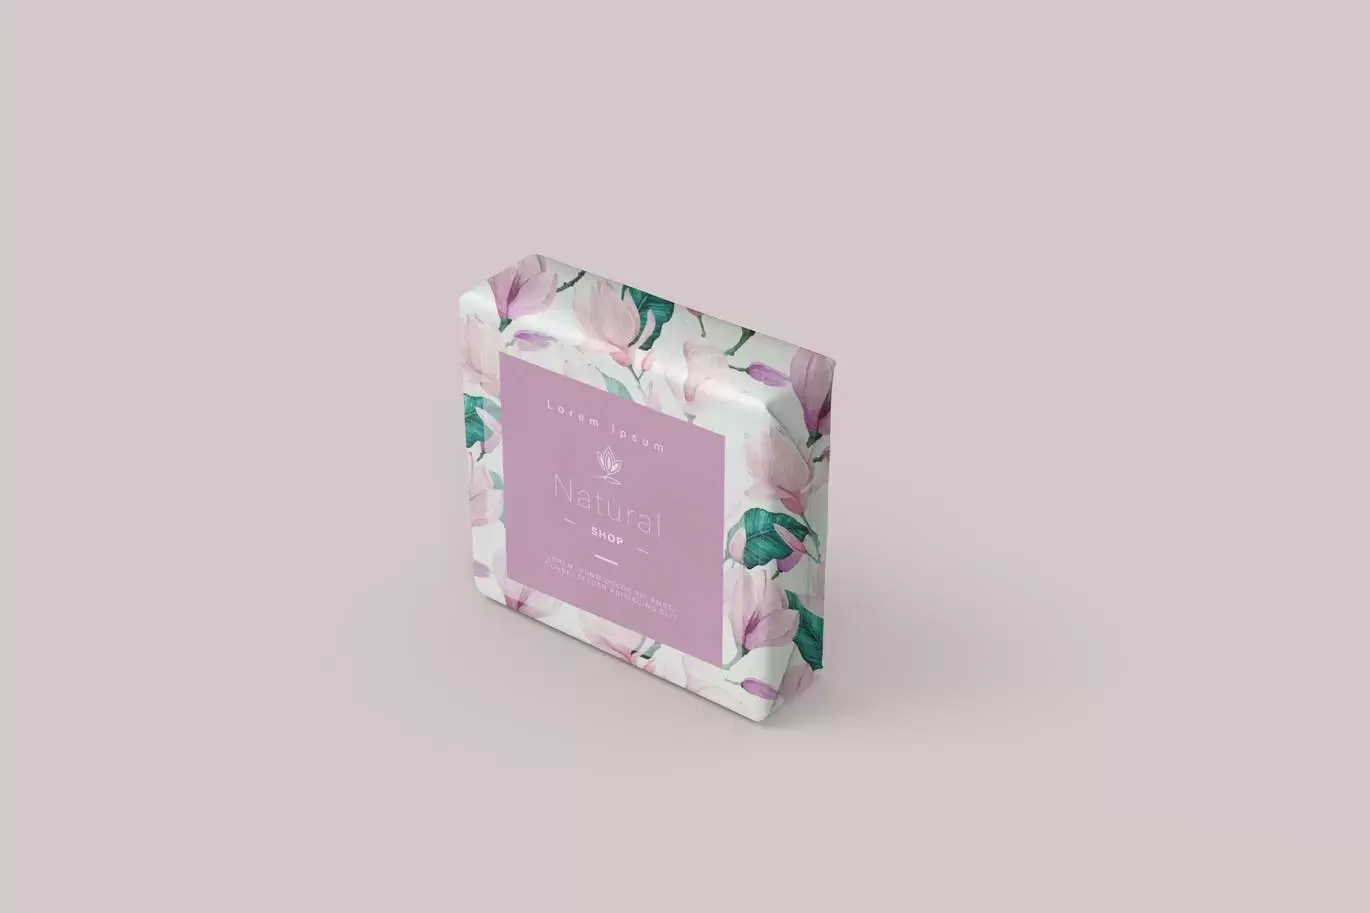 时尚高端逼真质感的肥皂包装设计VI样机展示模型mockups免费下载插图